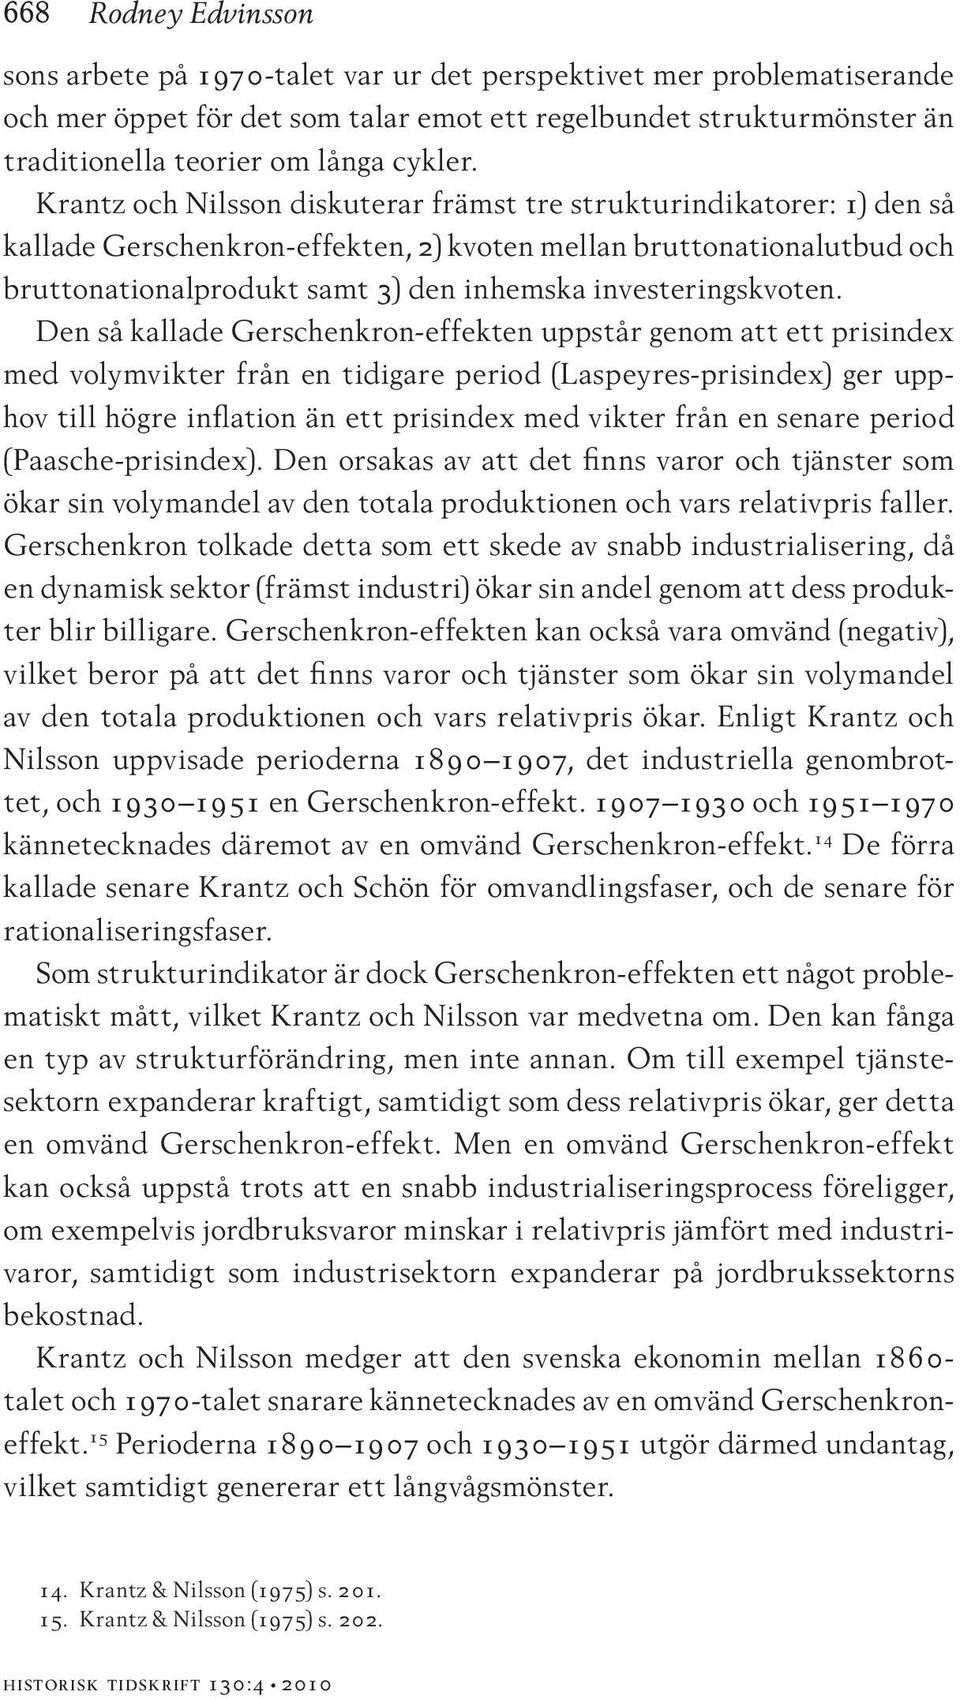 Krantz och Nilsson diskuterar främst tre strukturindikatorer: 1) den så kallade Gerschenkron-effekten, 2) kvoten mellan bruttonationalutbud och bruttonationalprodukt samt 3) den inhemska